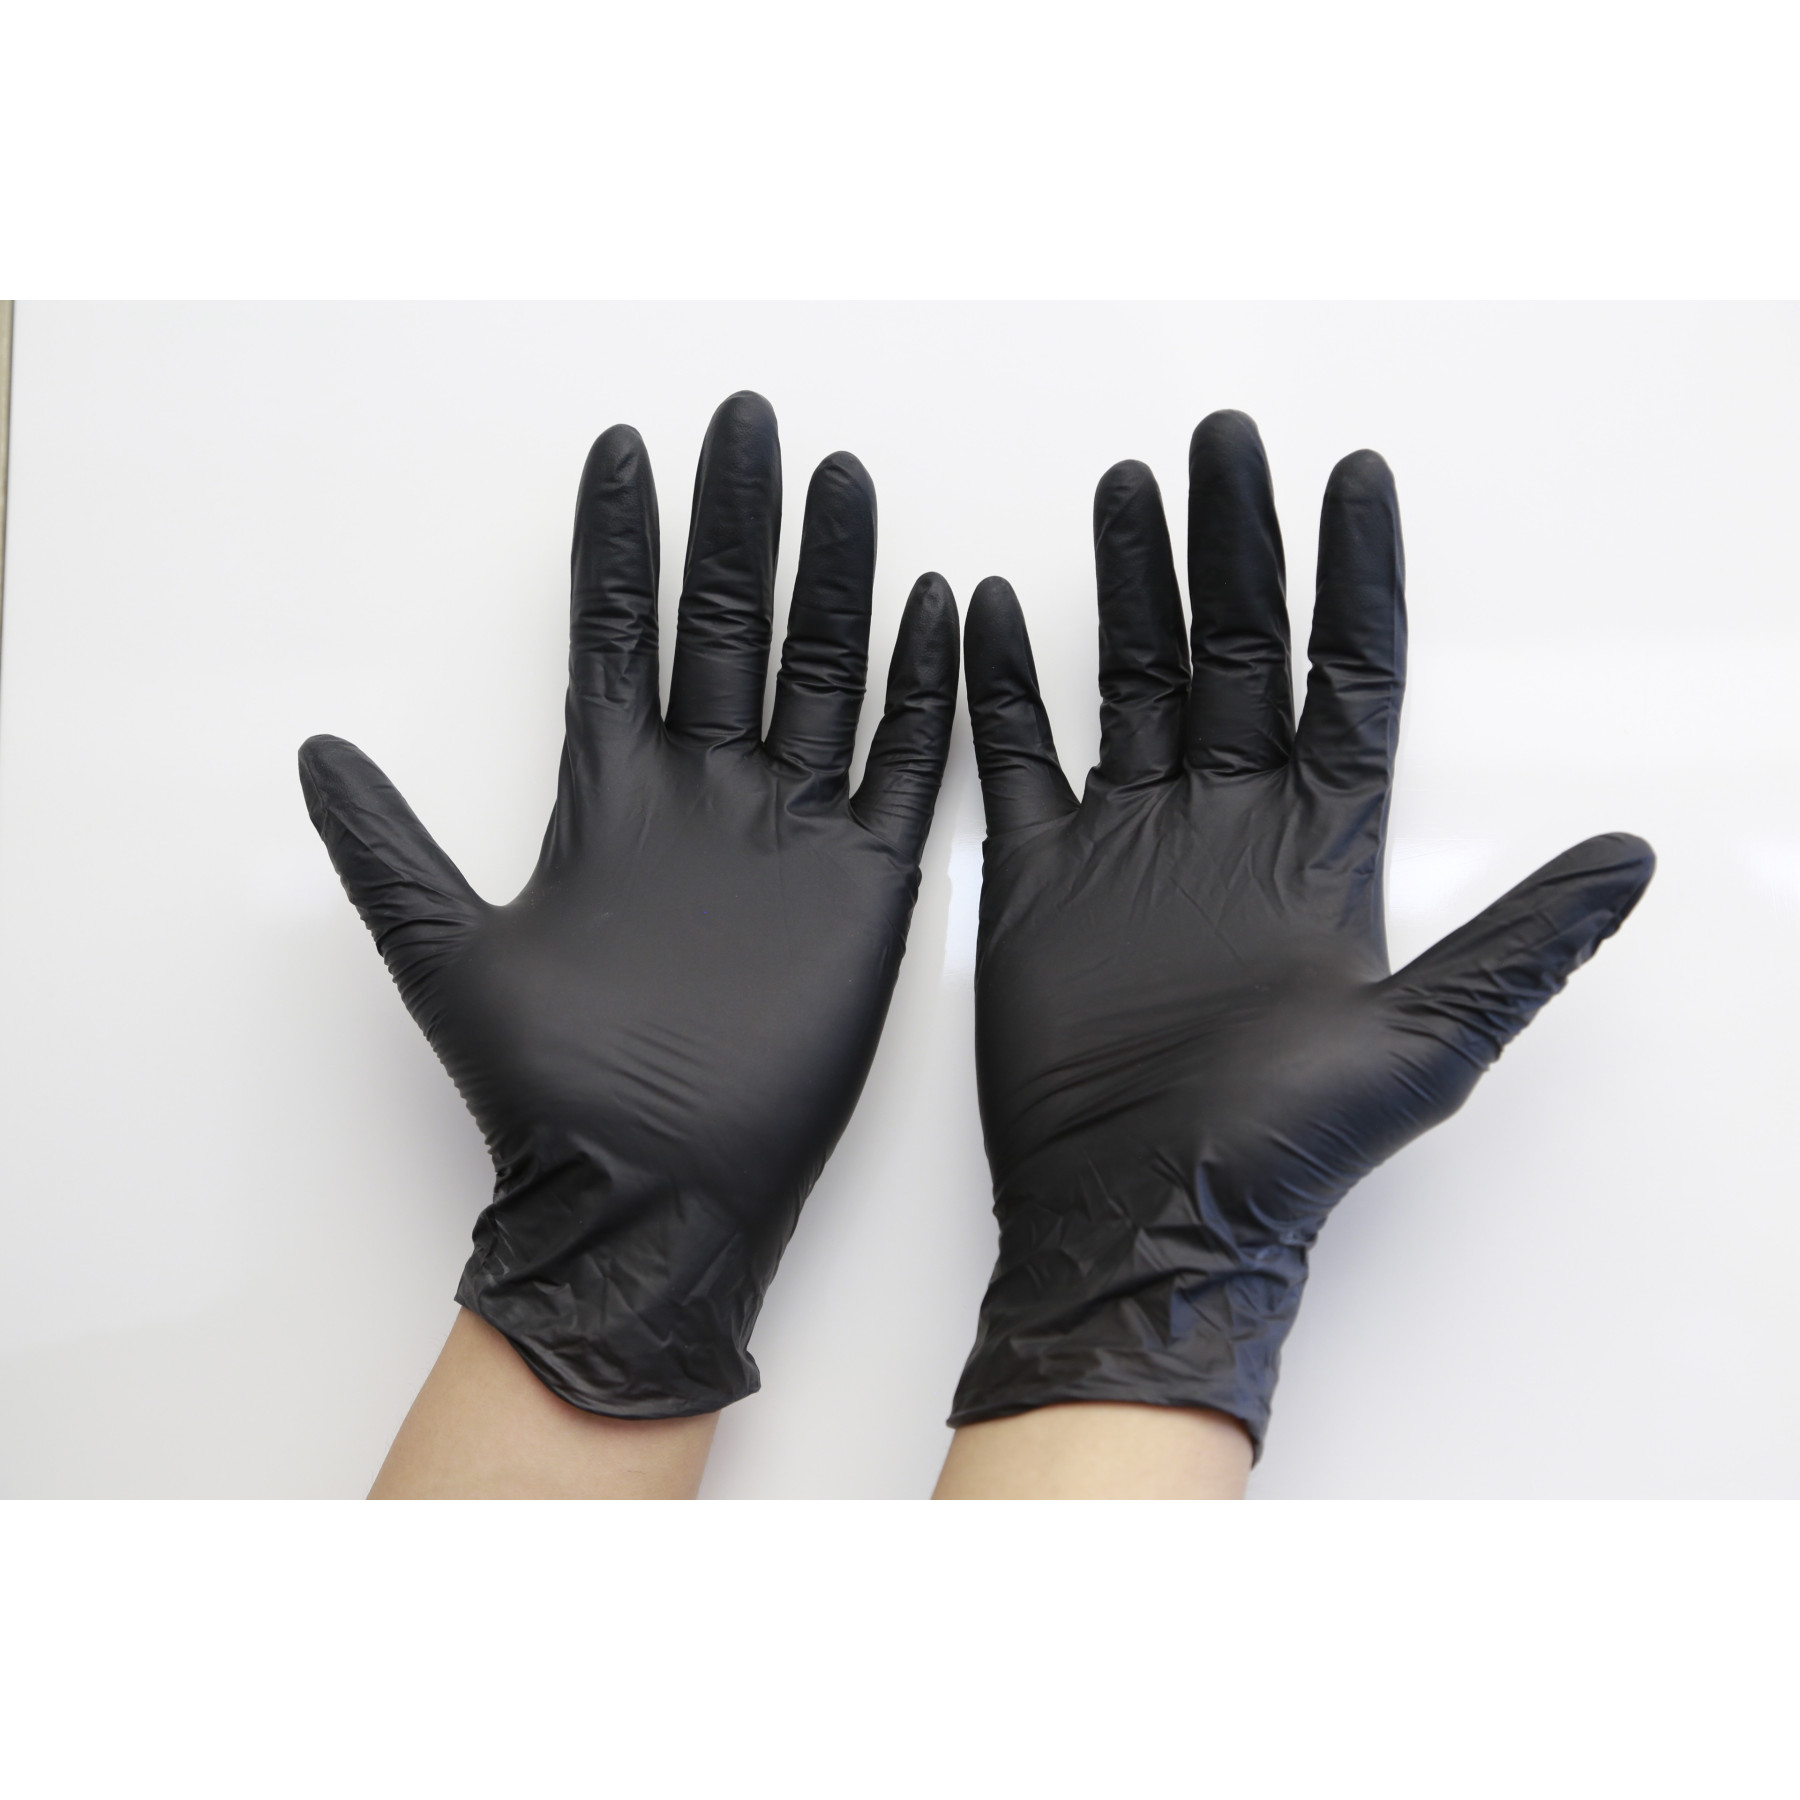 Craftmaterialen & Gereedschappen Microflex Midnight Black Nitrile Gloves BOX of 100 